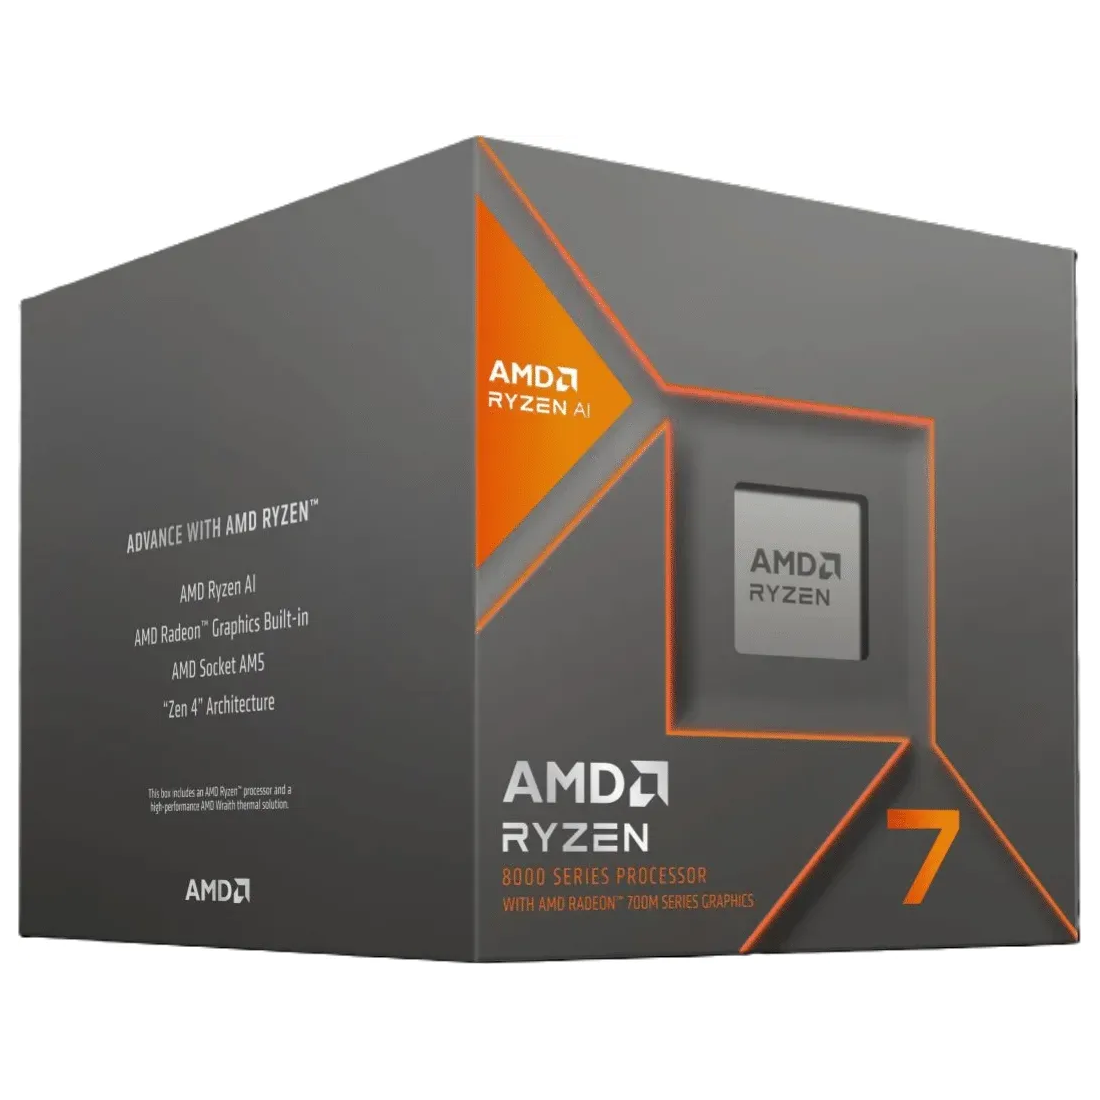 AMD Ryzen 7 8700G Prozessor - 8C/16T, 4.20-5.10GHz, boxed von AMD